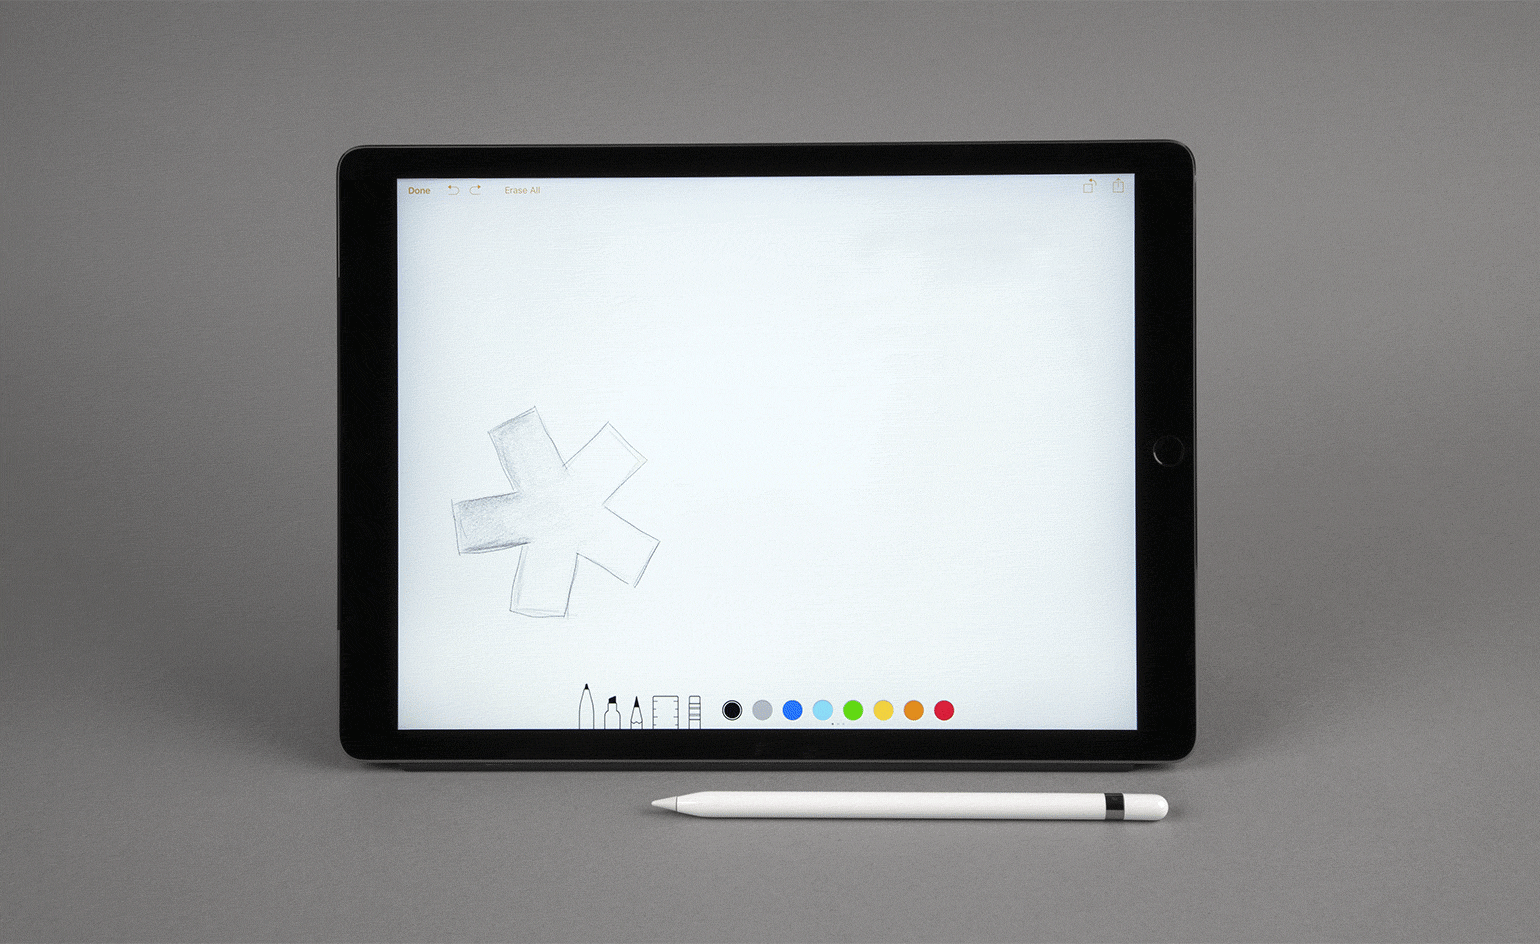 苹果铅笔在苹果iPad前的动图，屏幕上出现了不同颜色的“墙纸*”星号——这两种物品都在灰色背景下拍摄